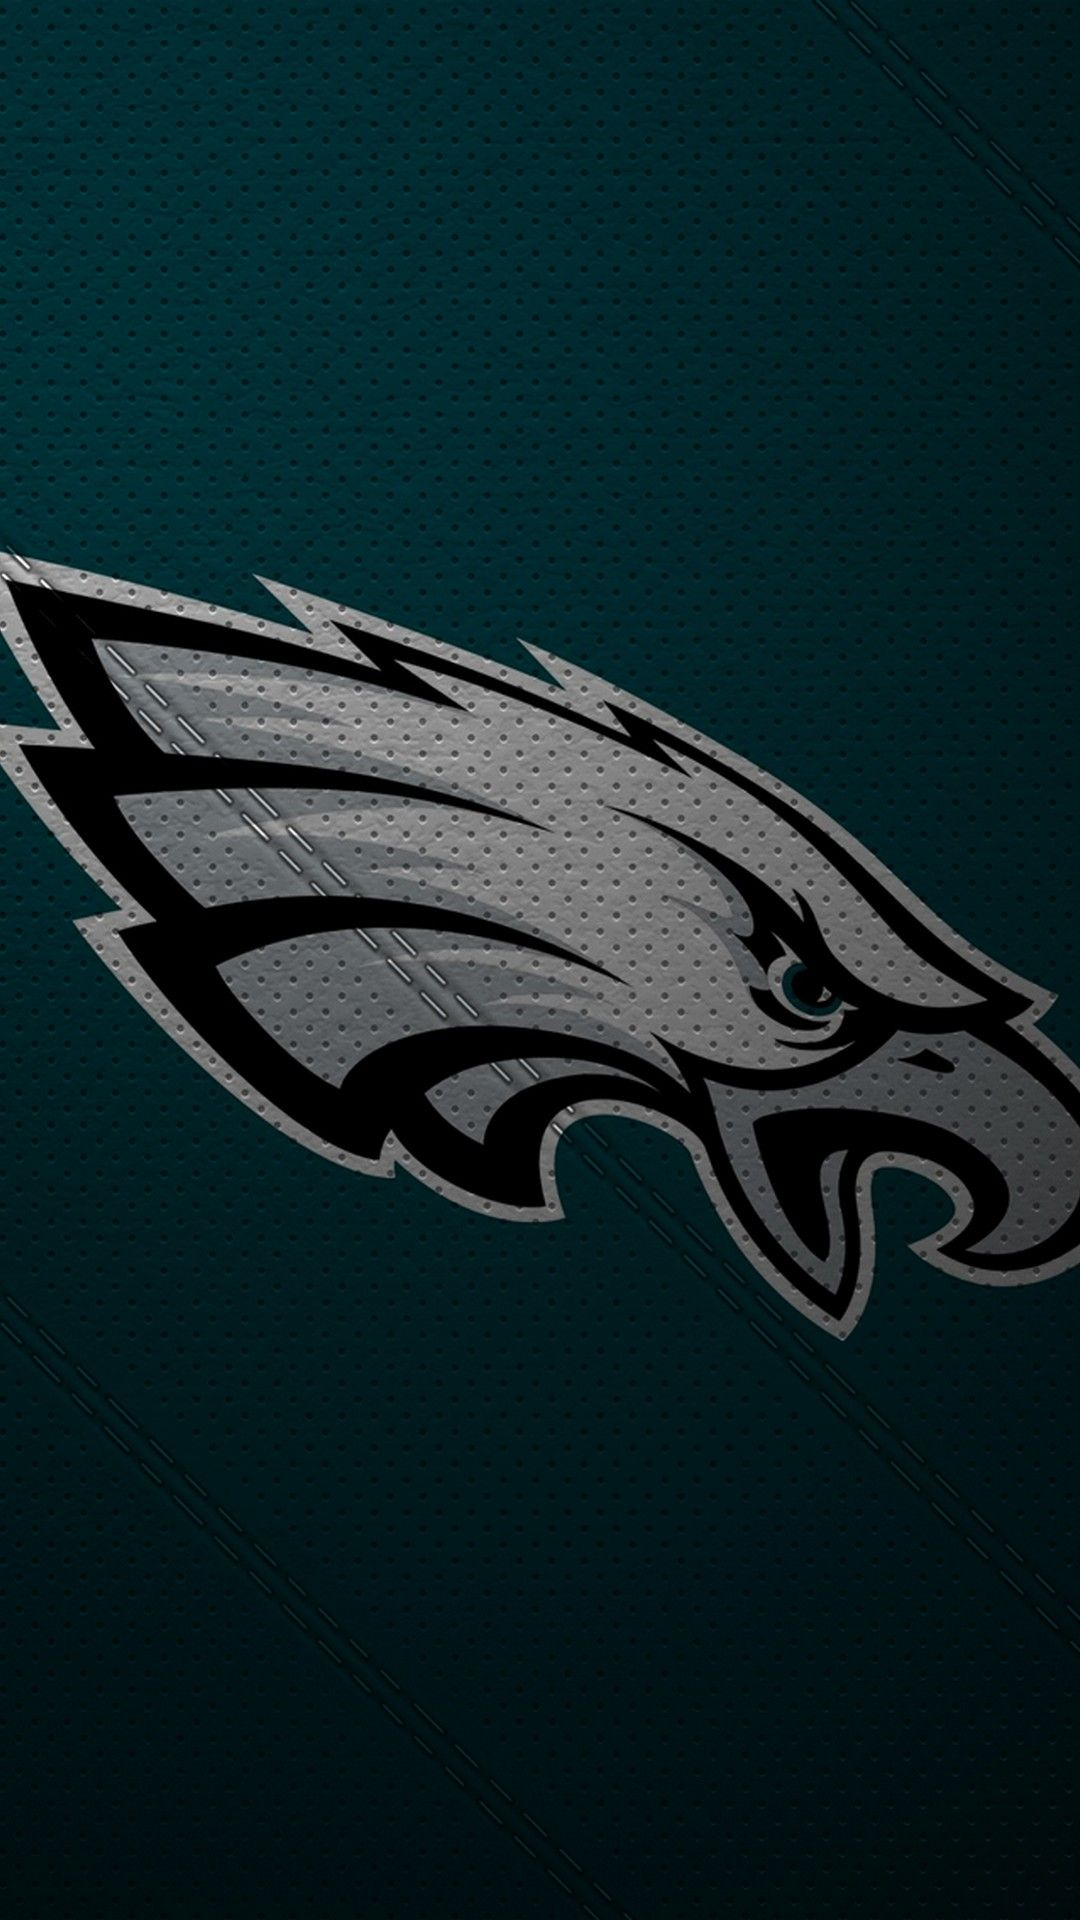 1080x1920 Eagles iPhone 8 Wallpaper 2022 NFL Football Wallpapers | Philadelphia eagles wallpaper, Eagles, Philadelphia eagles